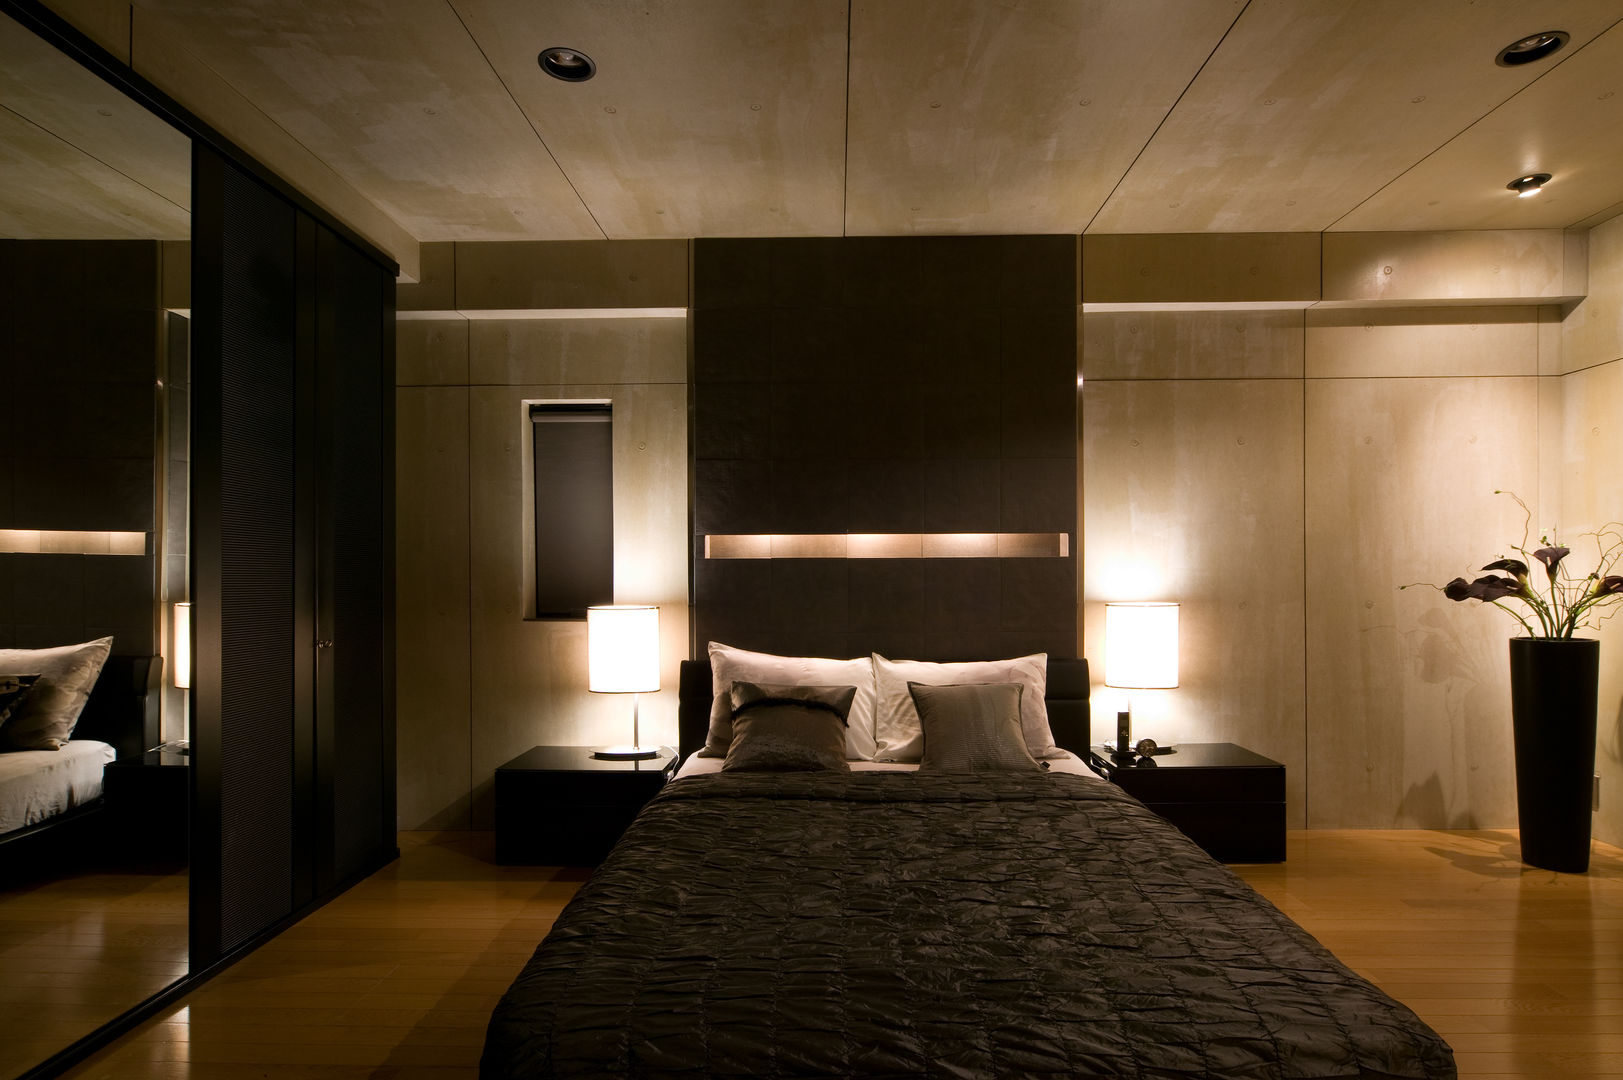 シンプルモダンなオフィス空間のある家, MACHIKO KOJIMA PRODUCE MACHIKO KOJIMA PRODUCE Dormitorios de estilo moderno